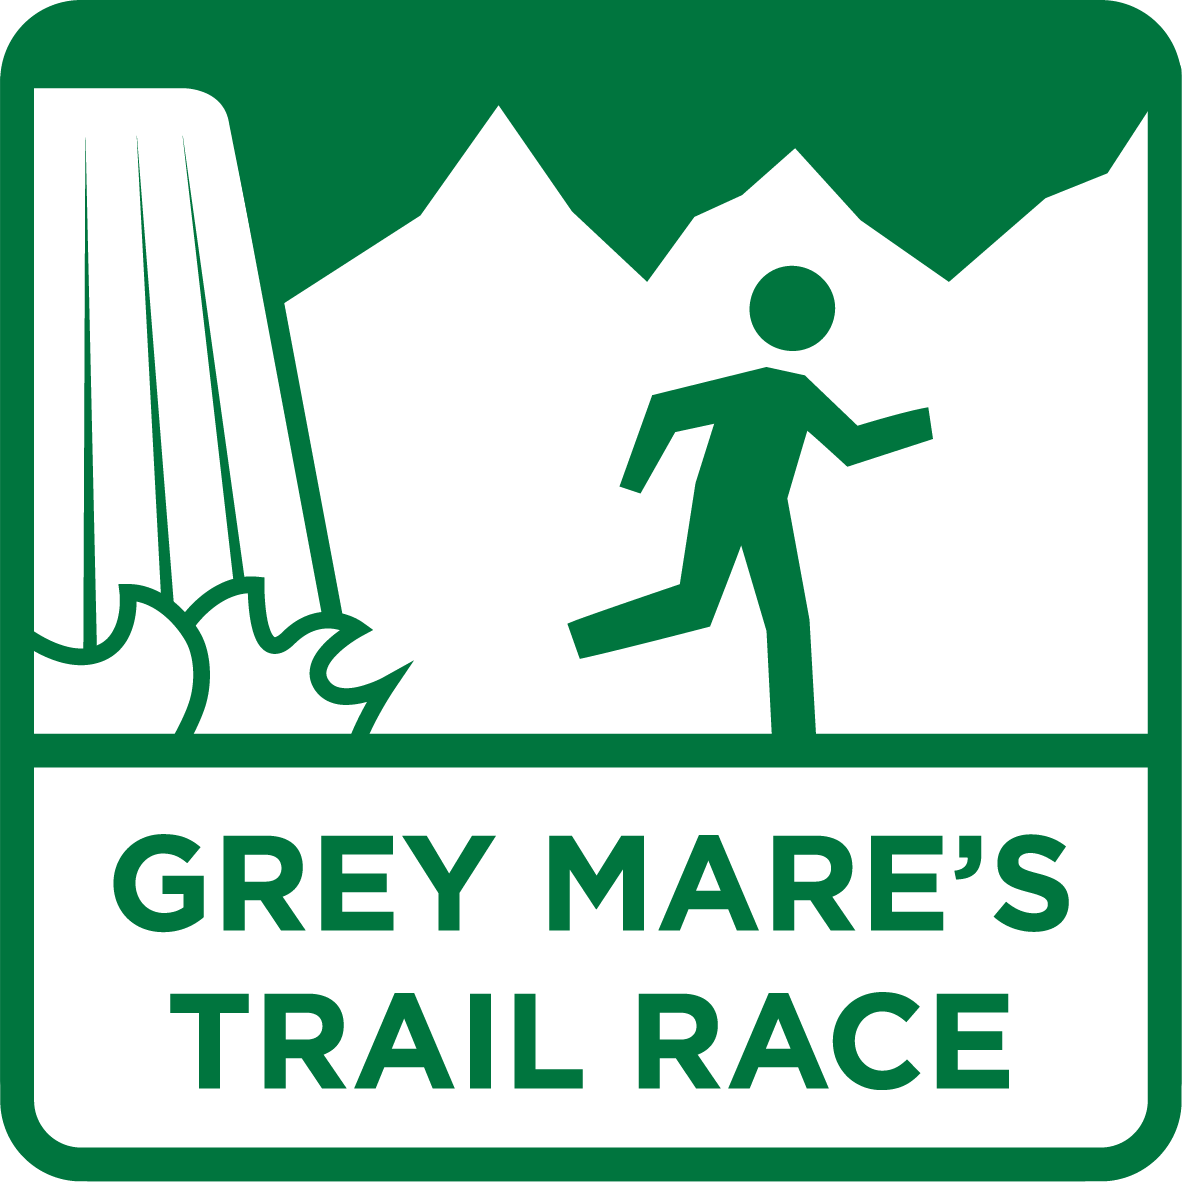 Skyline Scotland - Grey Mares trail race